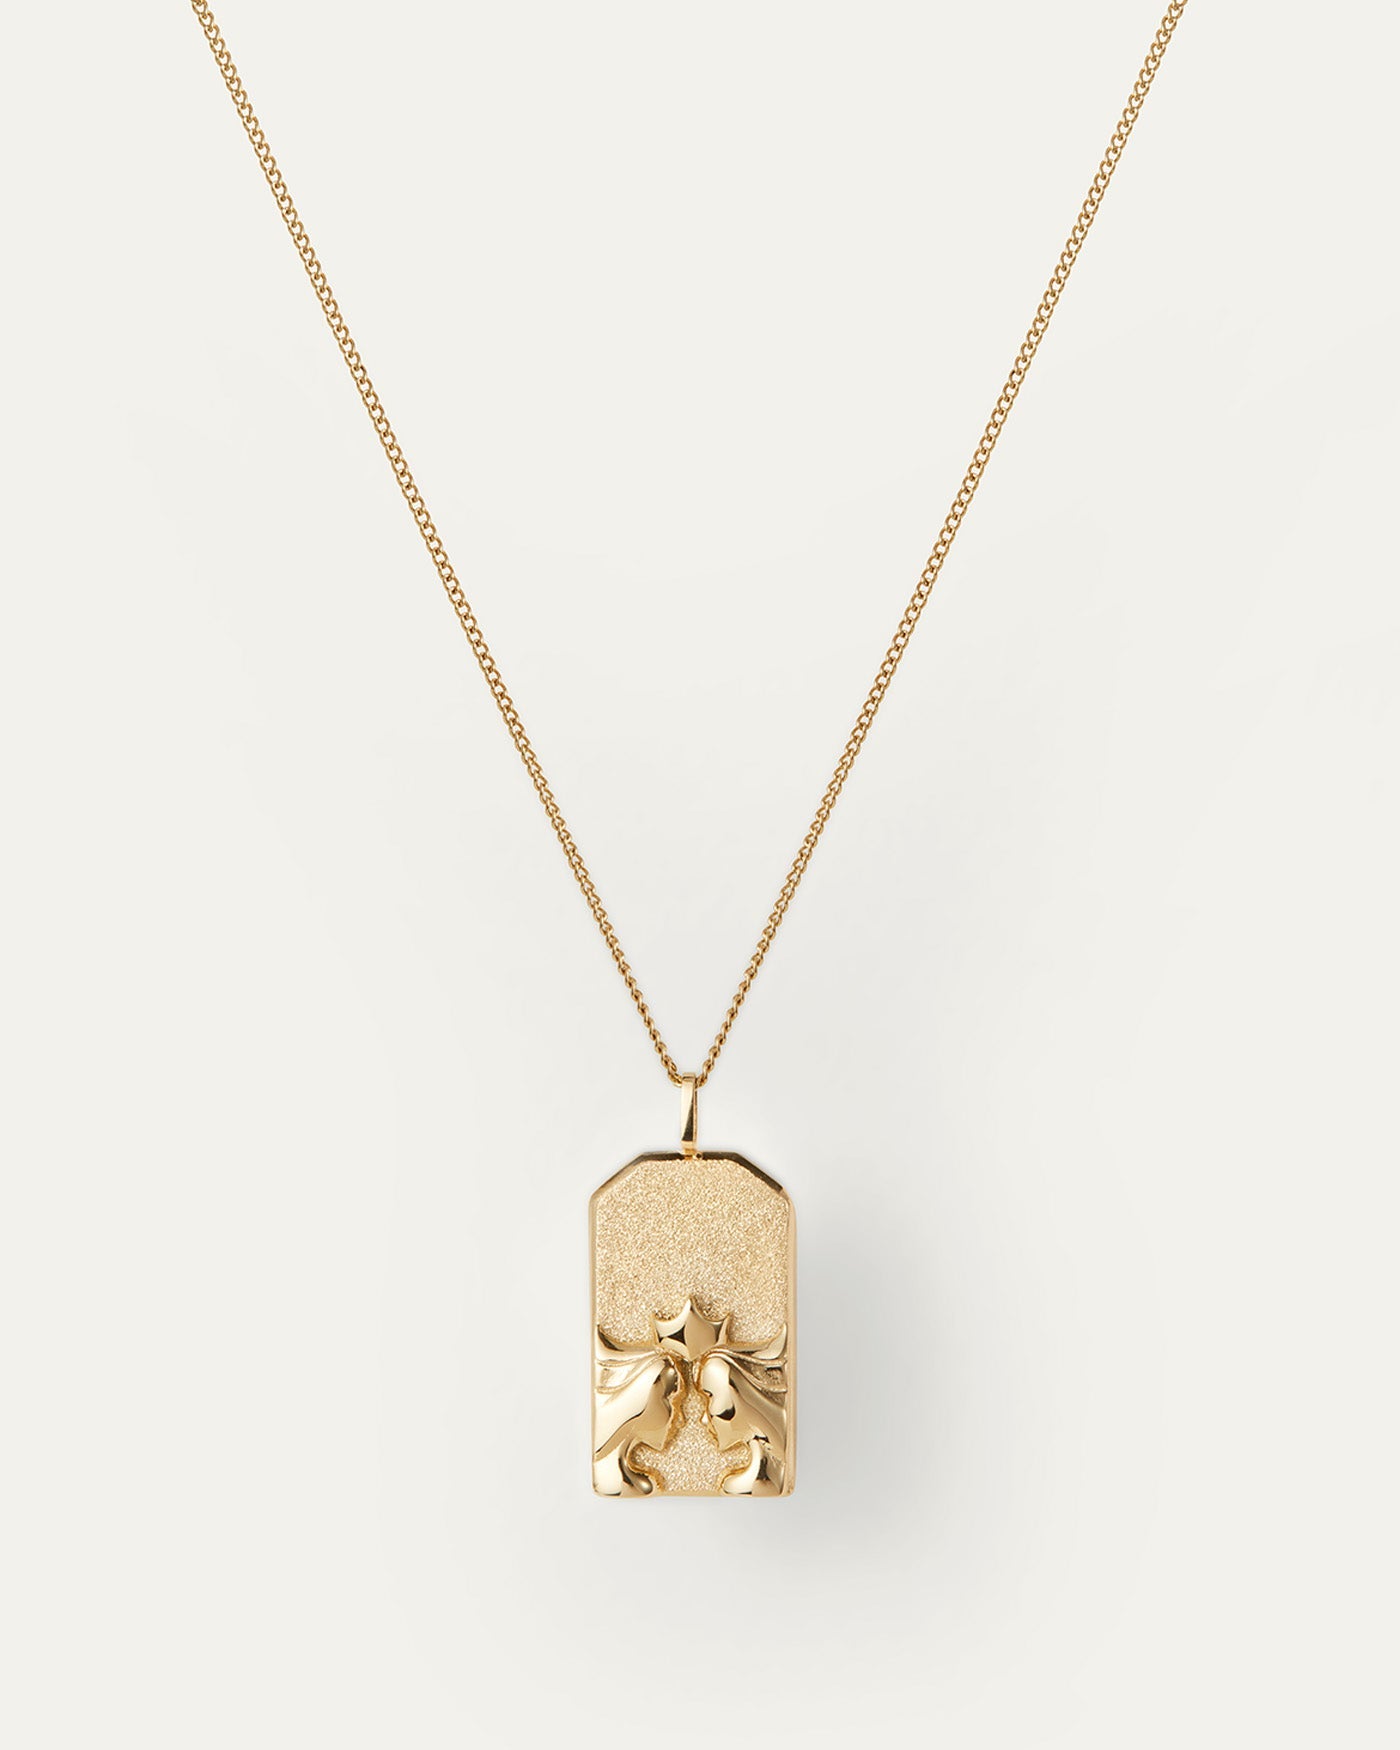 The Gemini Zodiac Pendant Necklace